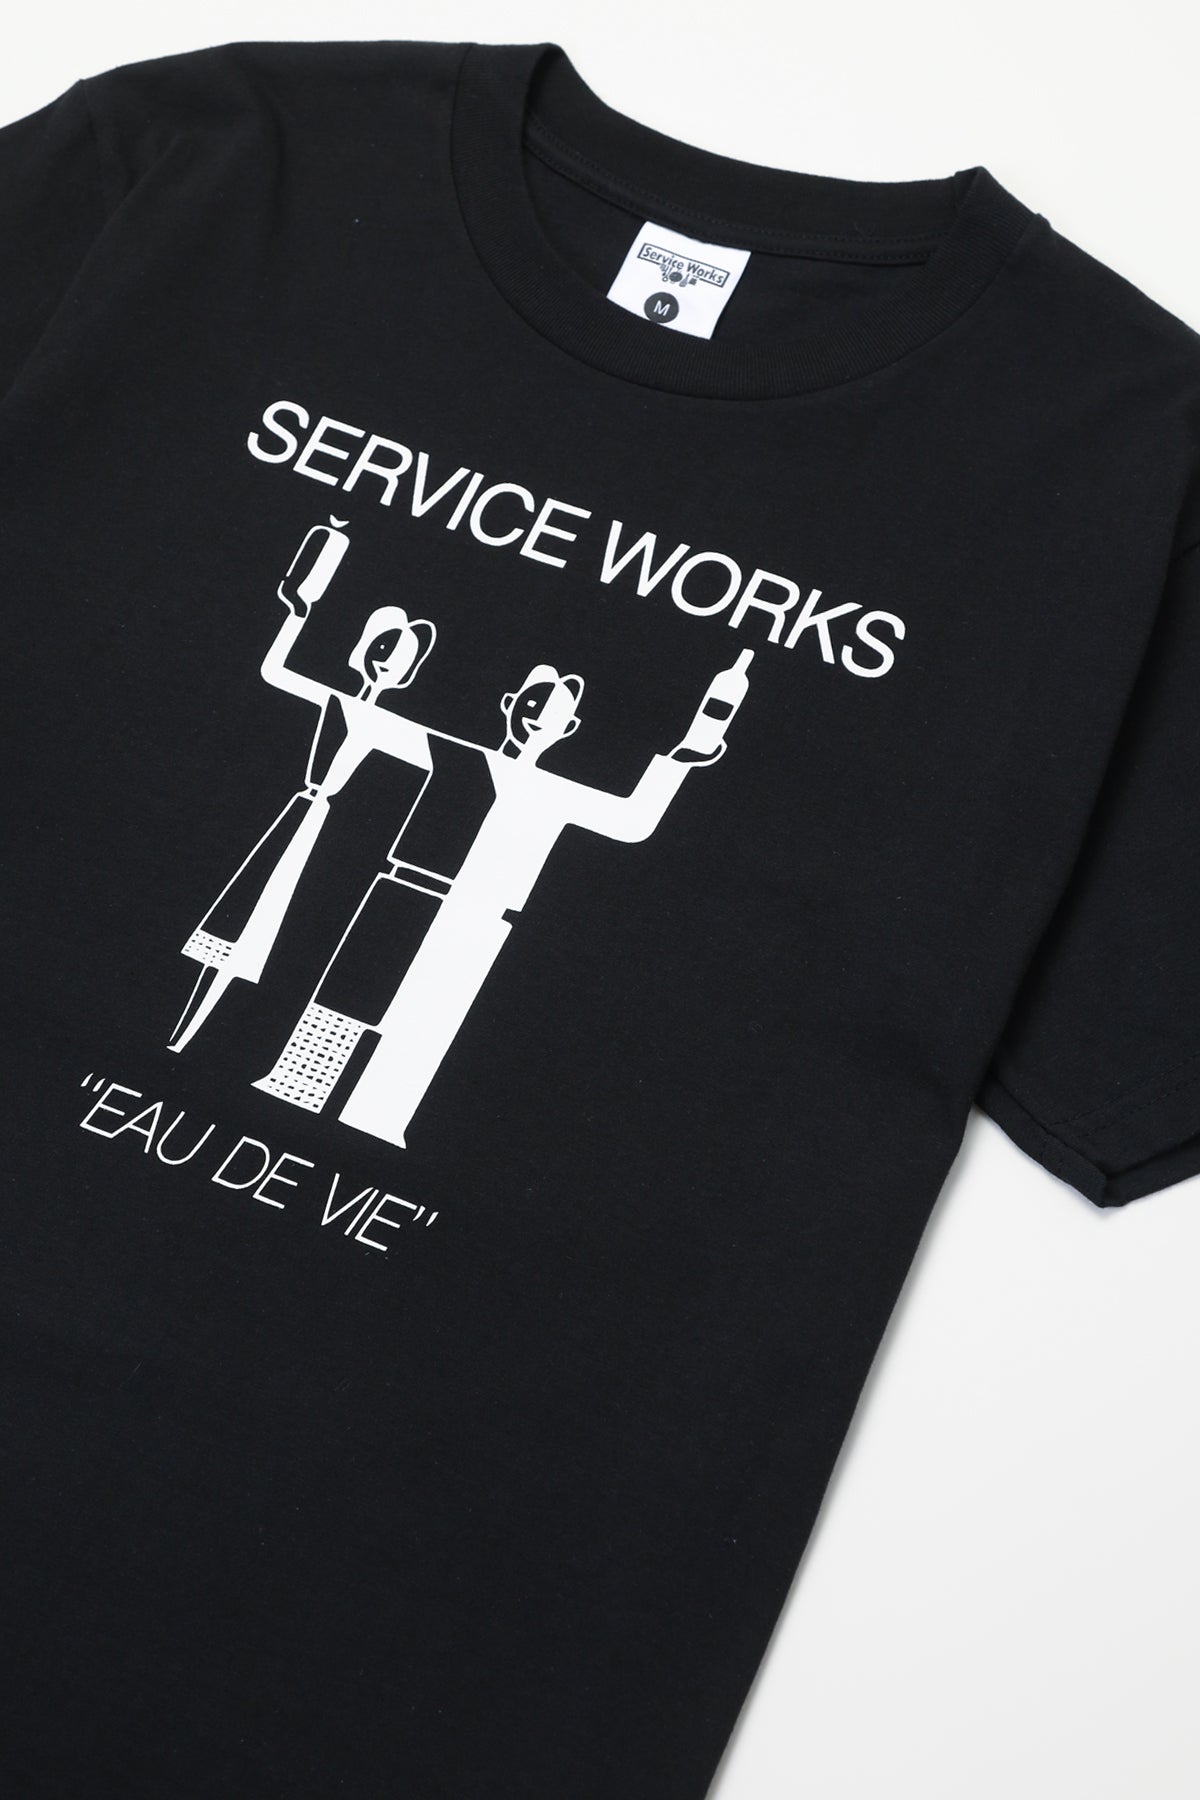 Service Works - Eau De Vie Tee - Black